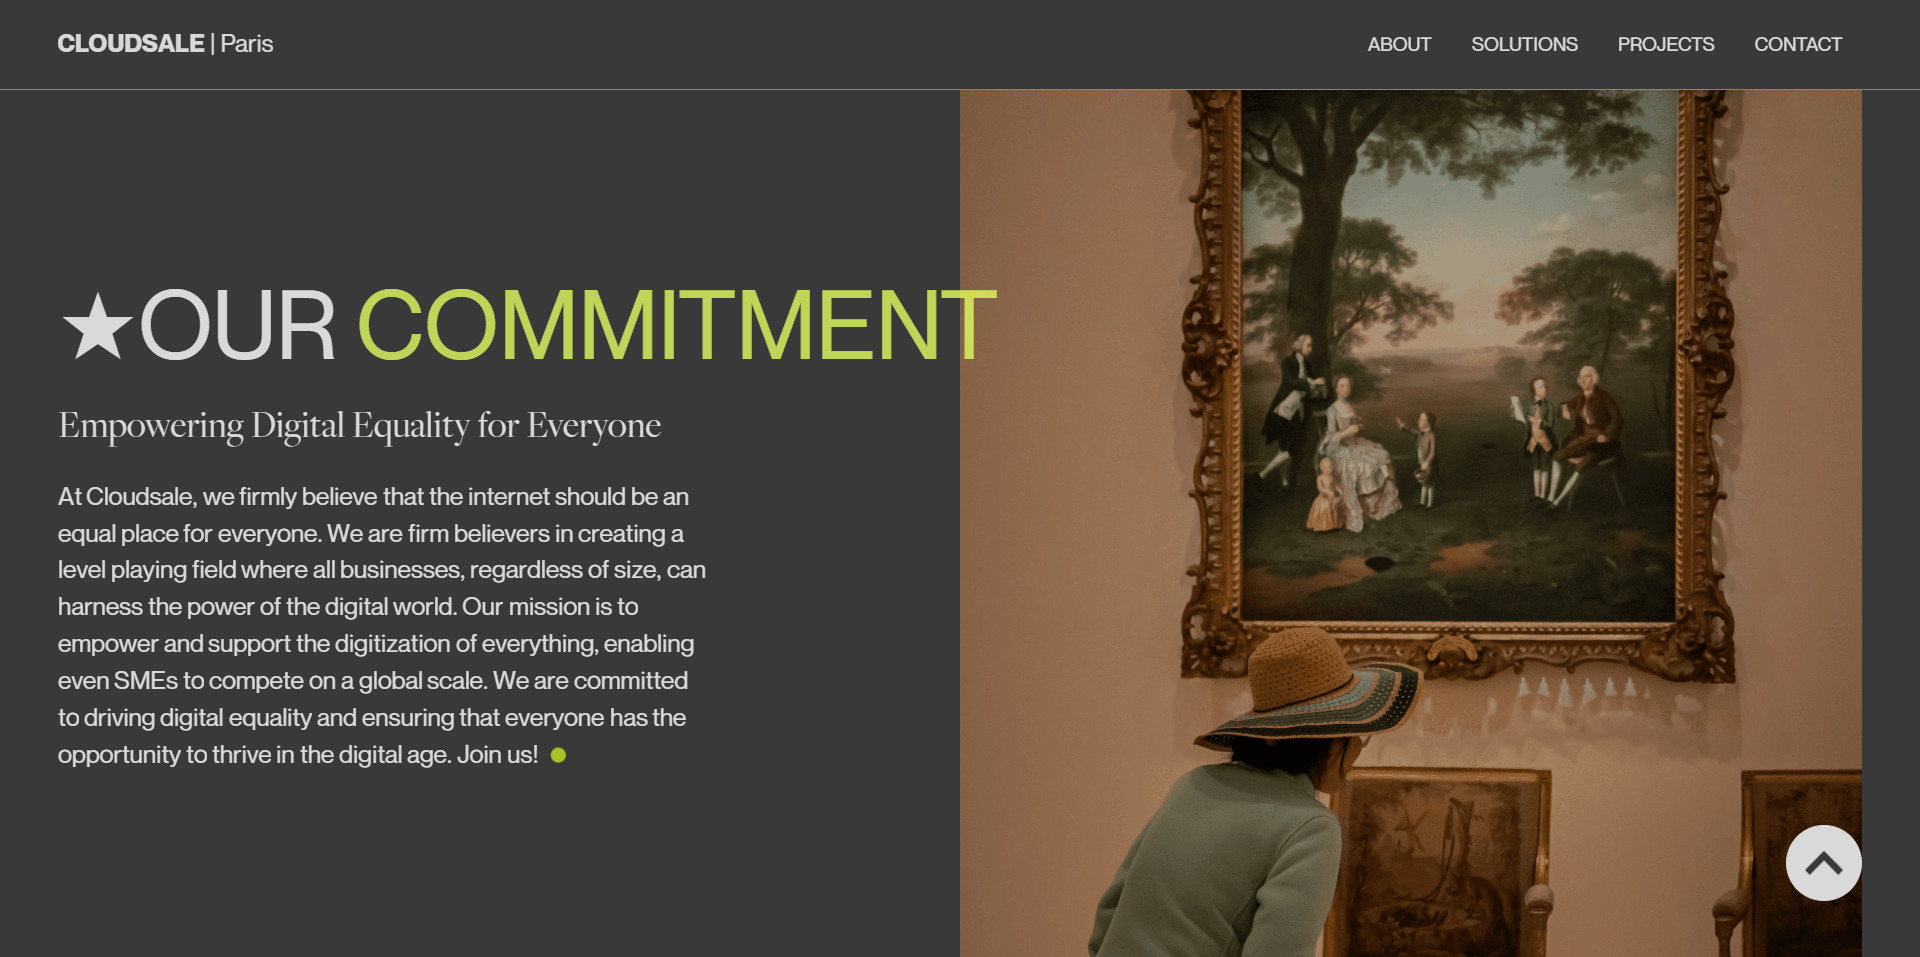 CloudSale – Paris Agency Portfolio Button